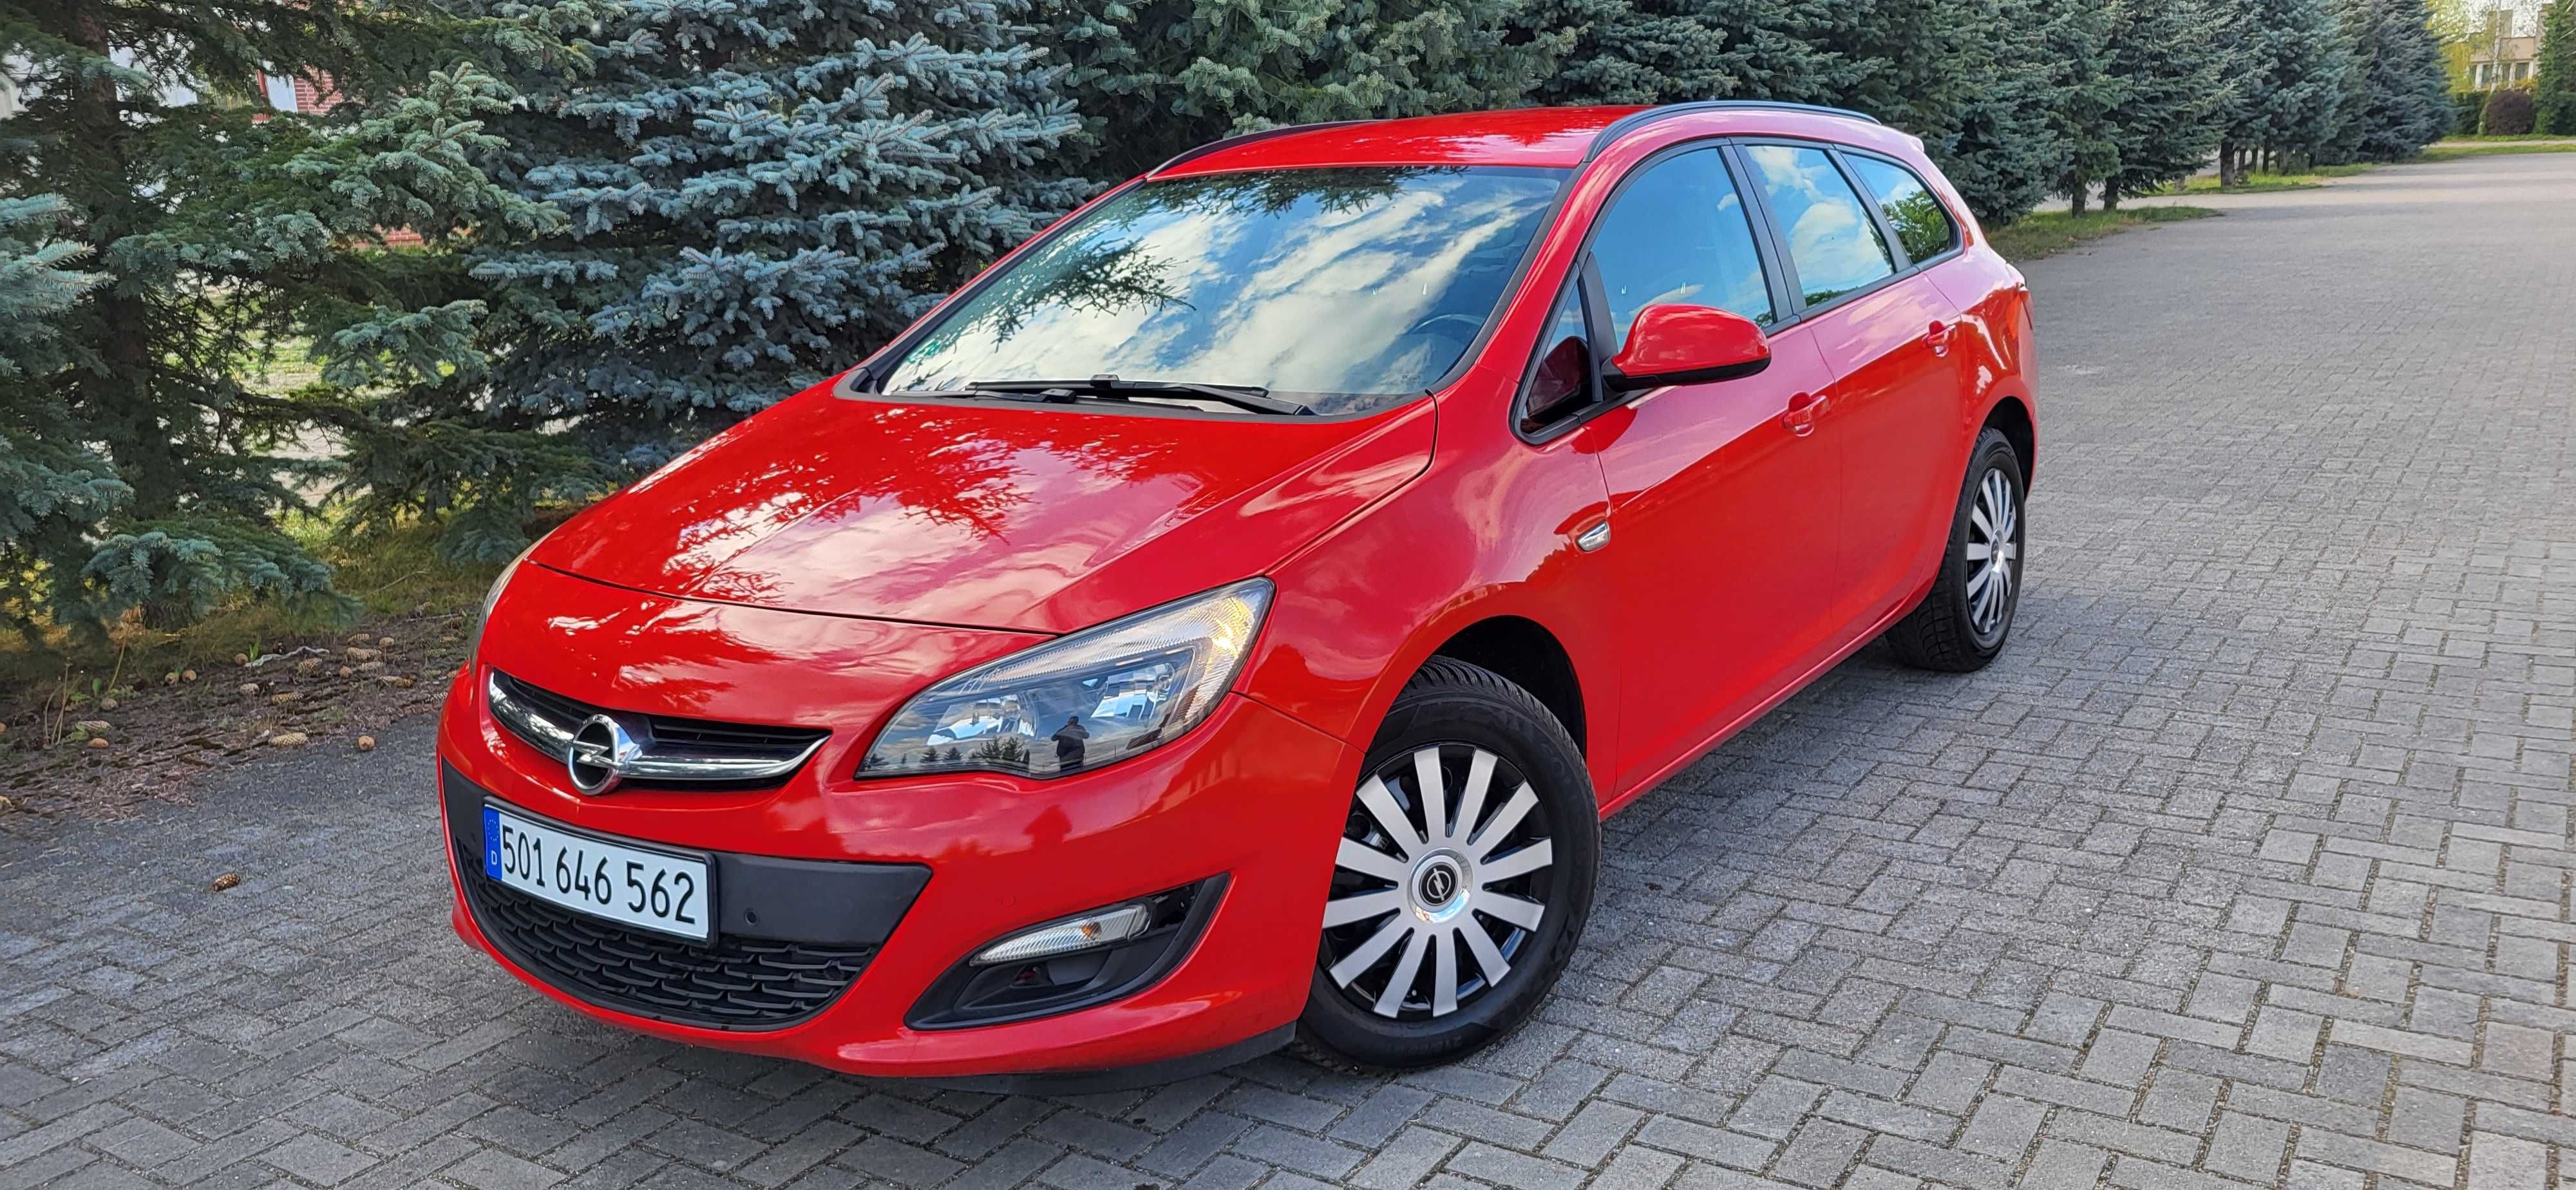 Opel Astra Lift 1.6Cdti model 2016r